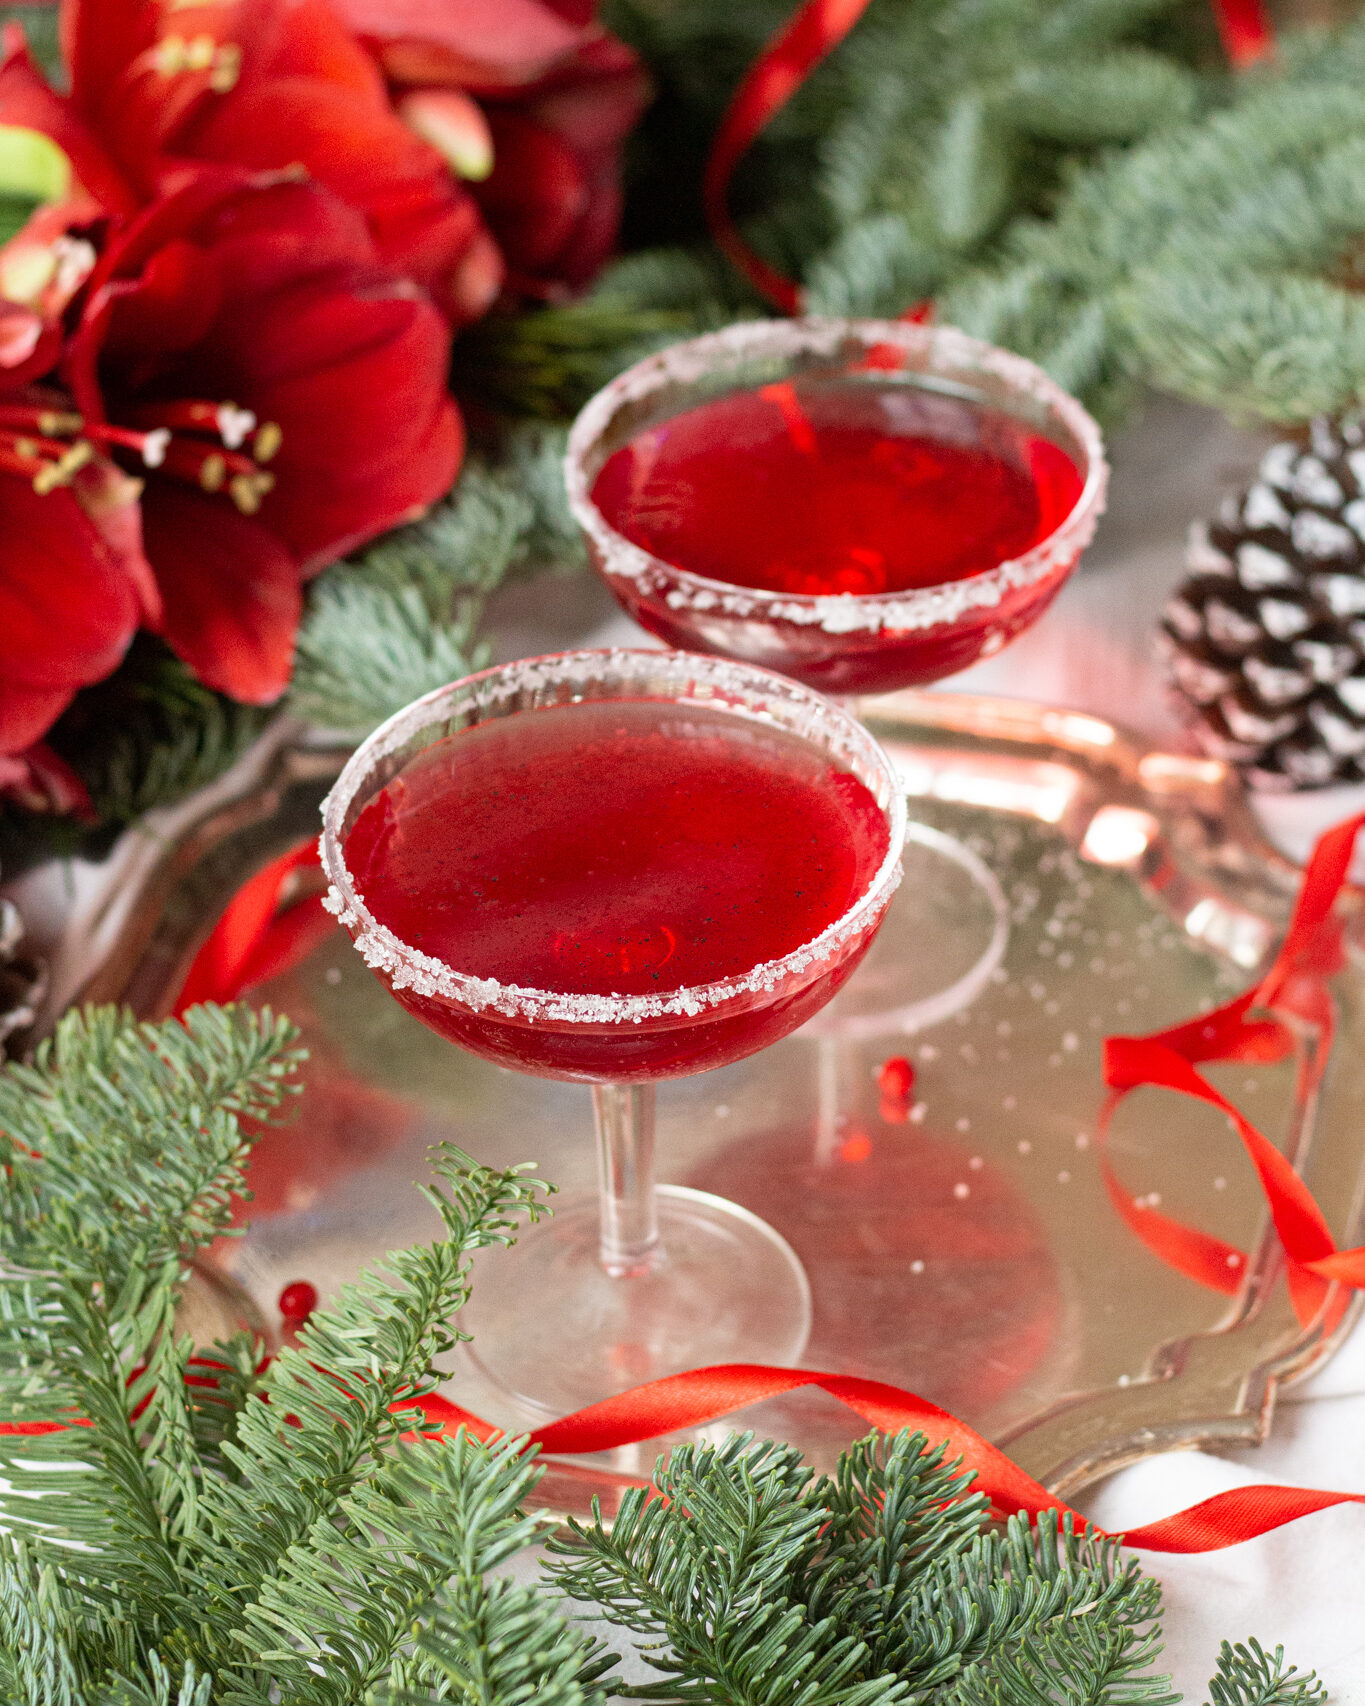 Когда хочется угостить гостей чем-то очень вкусным, этот праздничный коктейль – то, что вам нужно. Красный цвет, пузырьки и ванильный аромат!